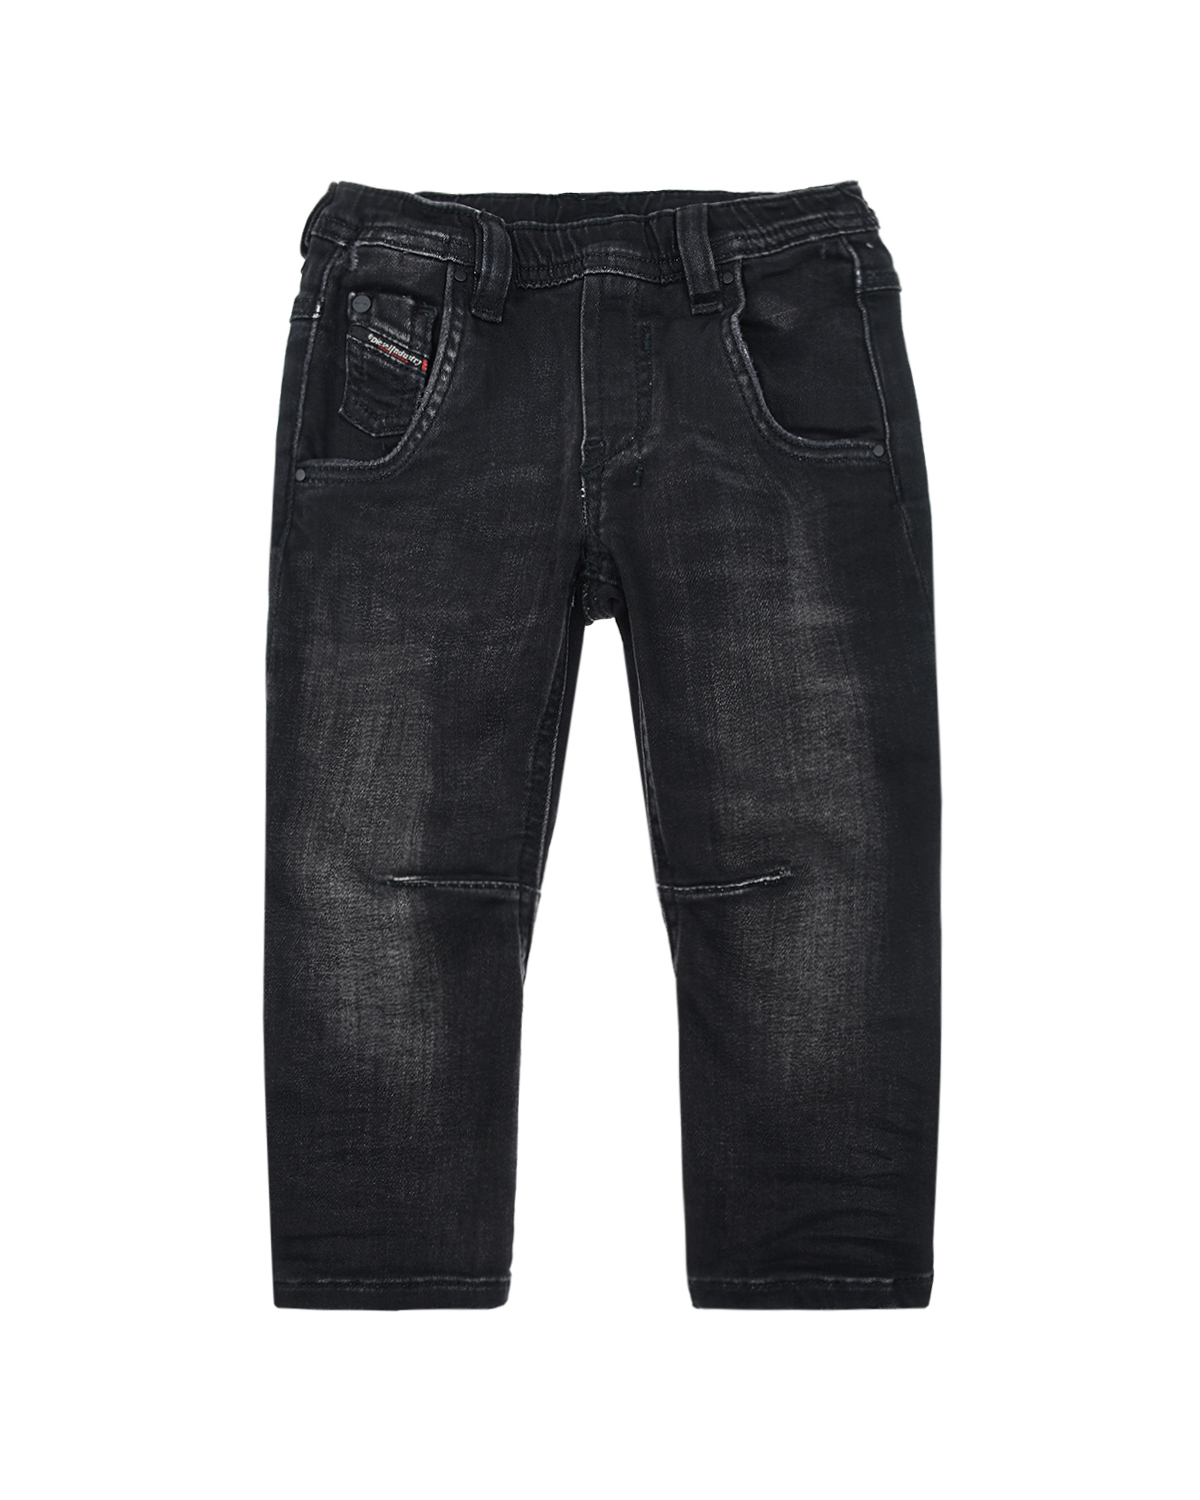 Потертые джинсы с поясом на резинке Diesel детские, размер 86, цвет серый - фото 1